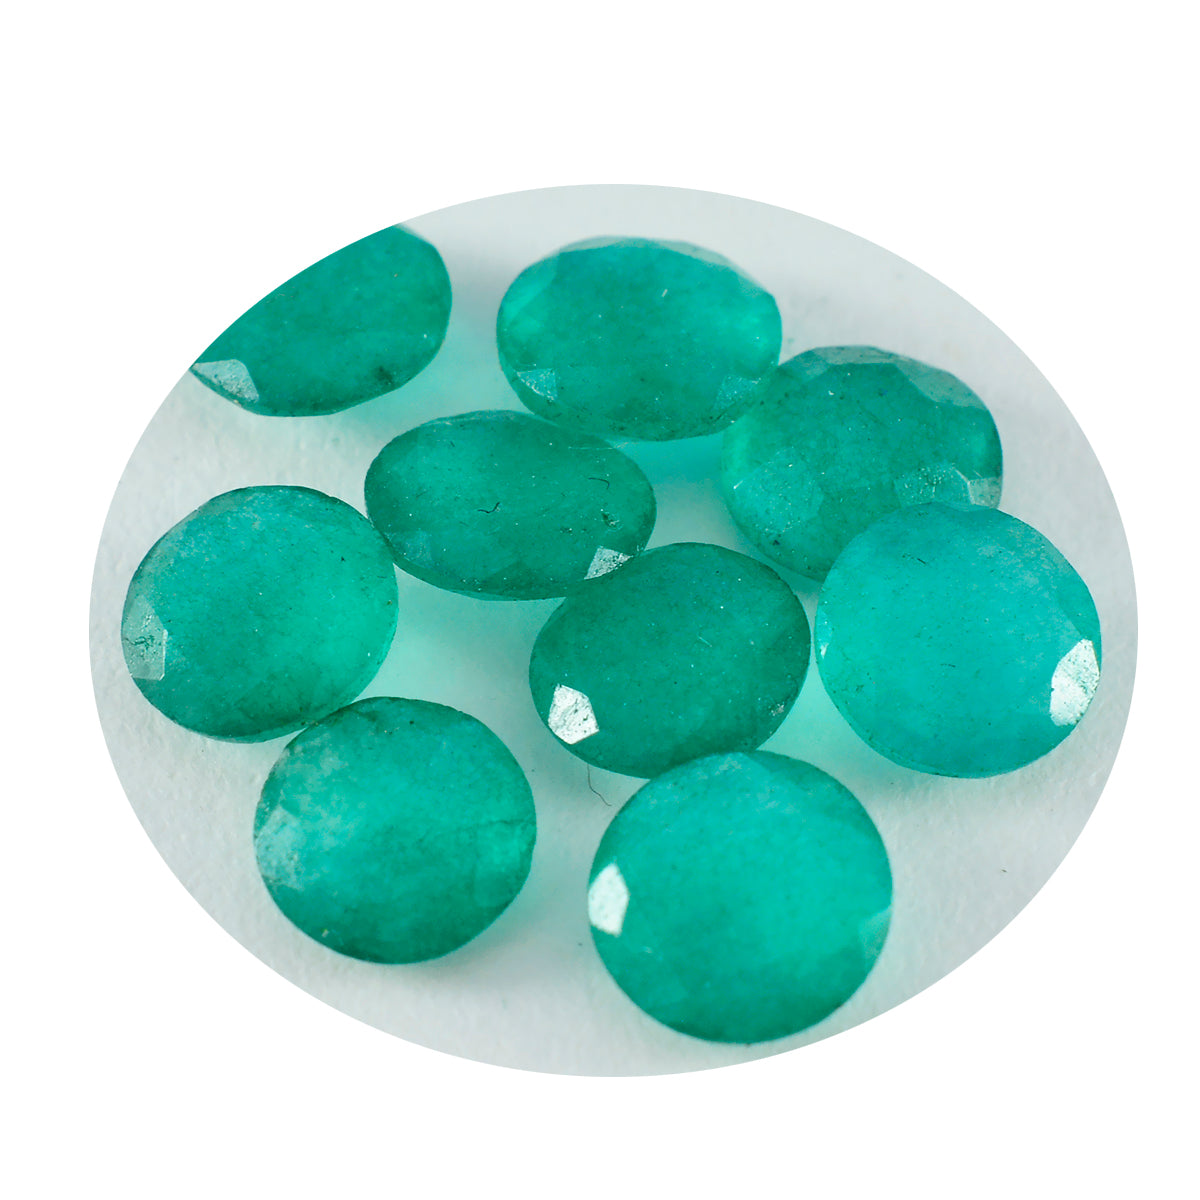 Riyogems 1pc véritable jaspe vert à facettes 9x9mm forme ronde belle qualité pierre précieuse en vrac